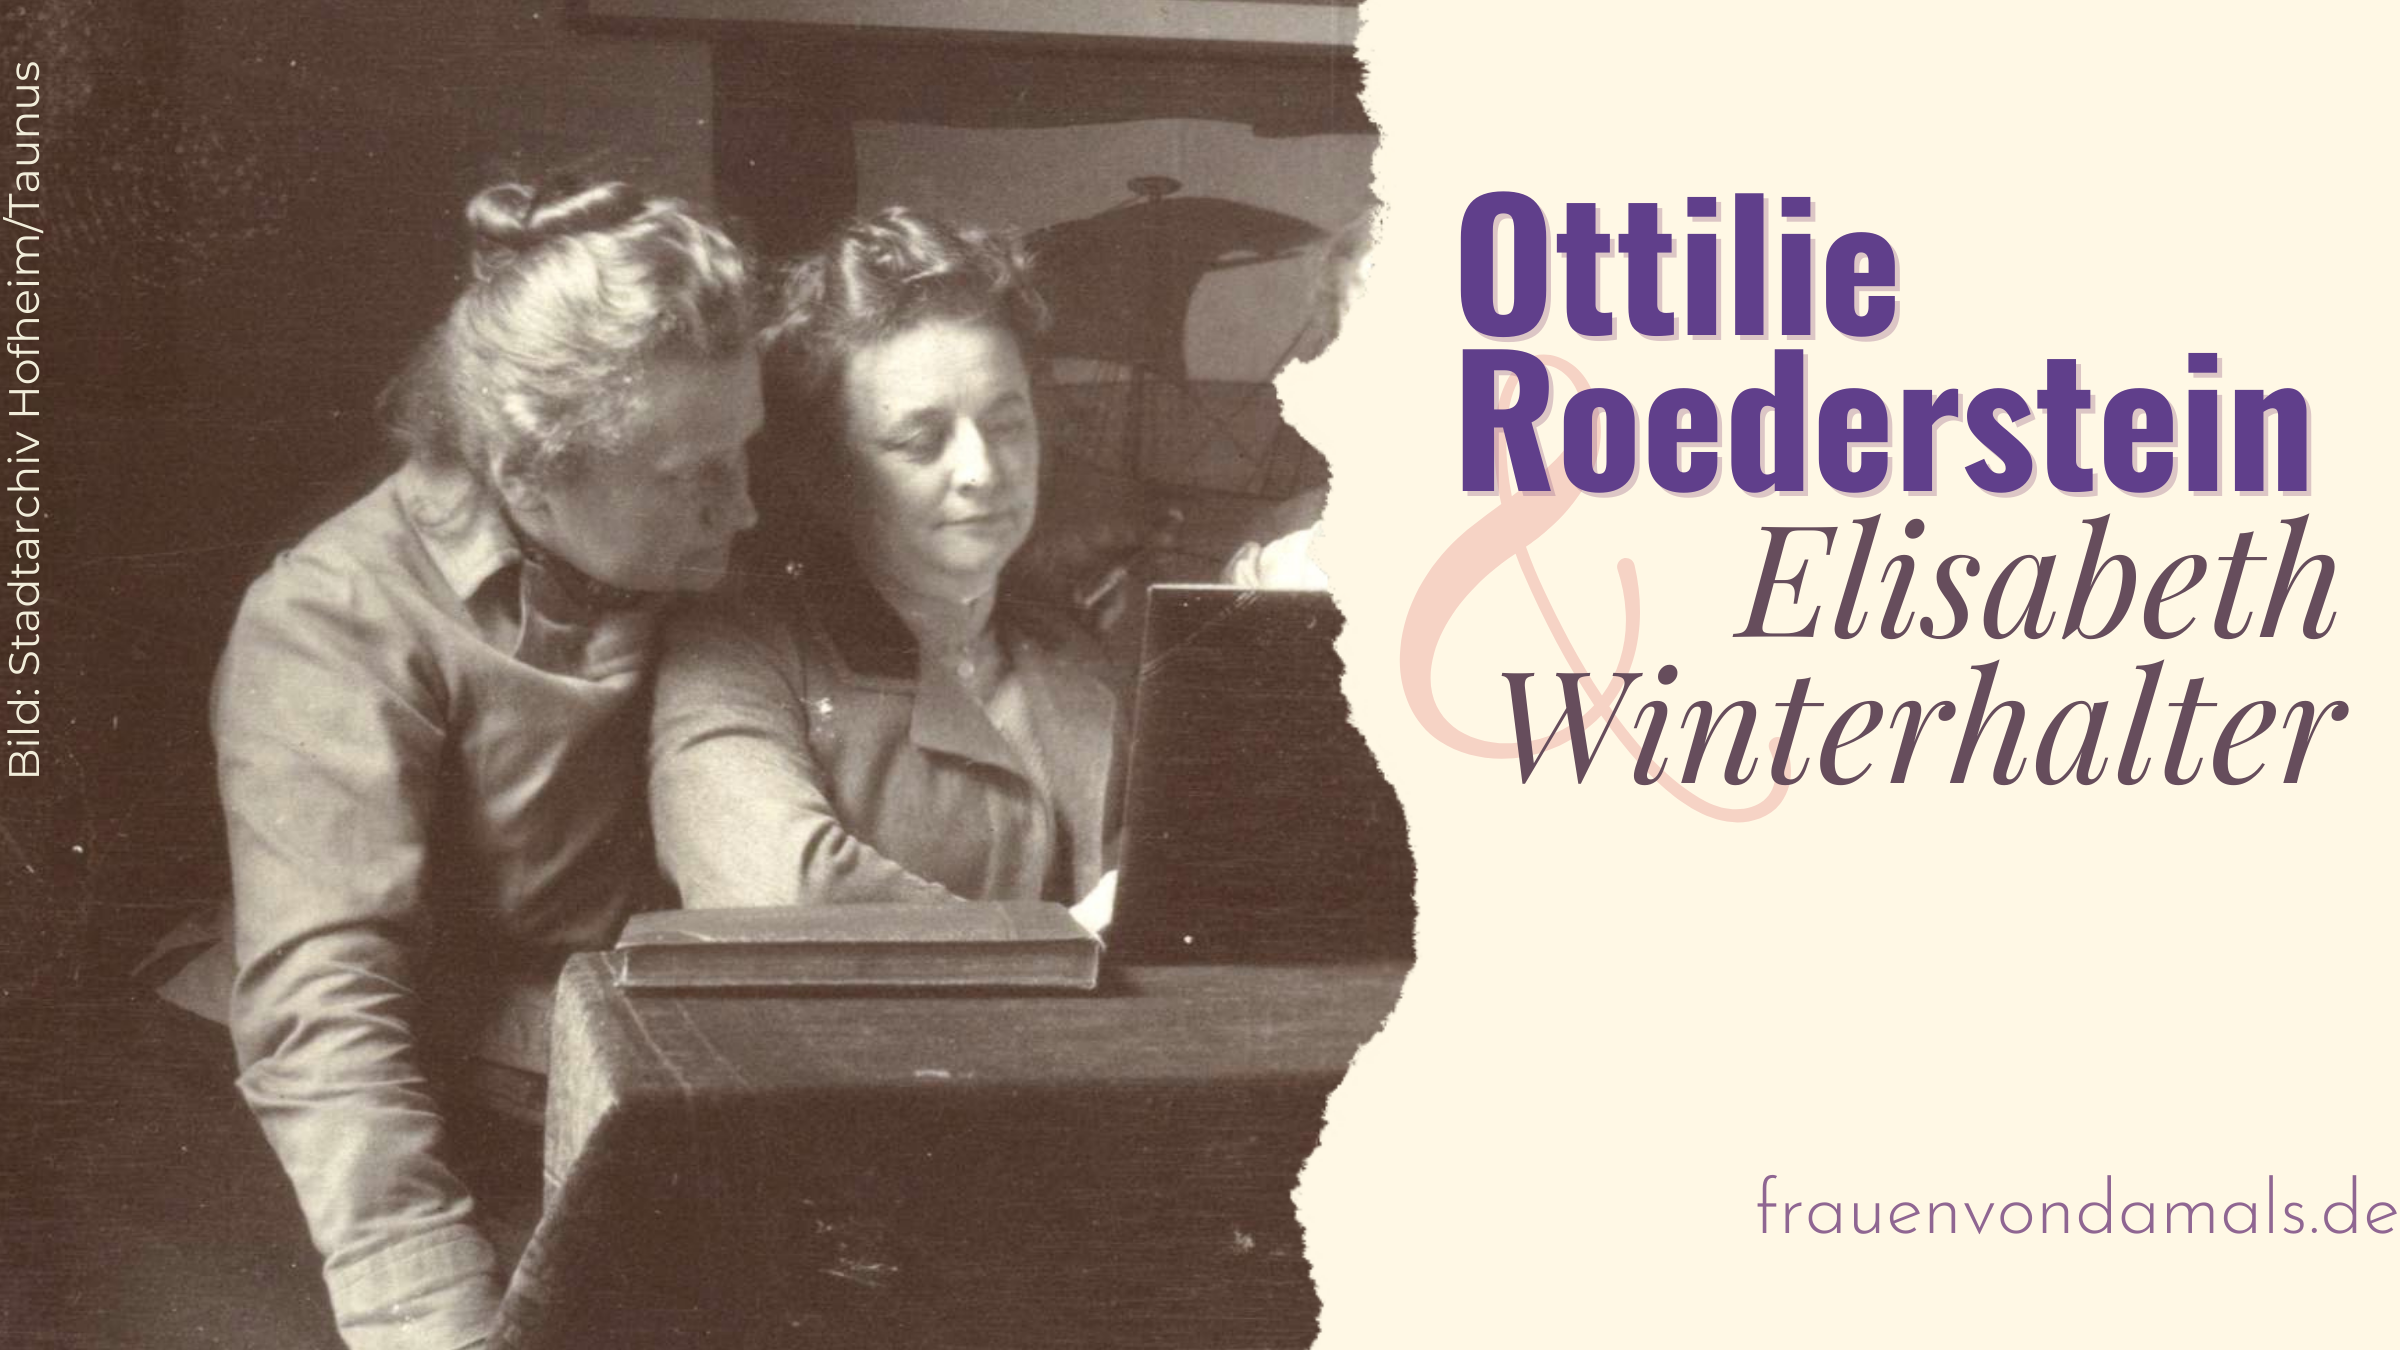 Folge 23: Ottilie Roederstein und Elisabeth Winterhalter